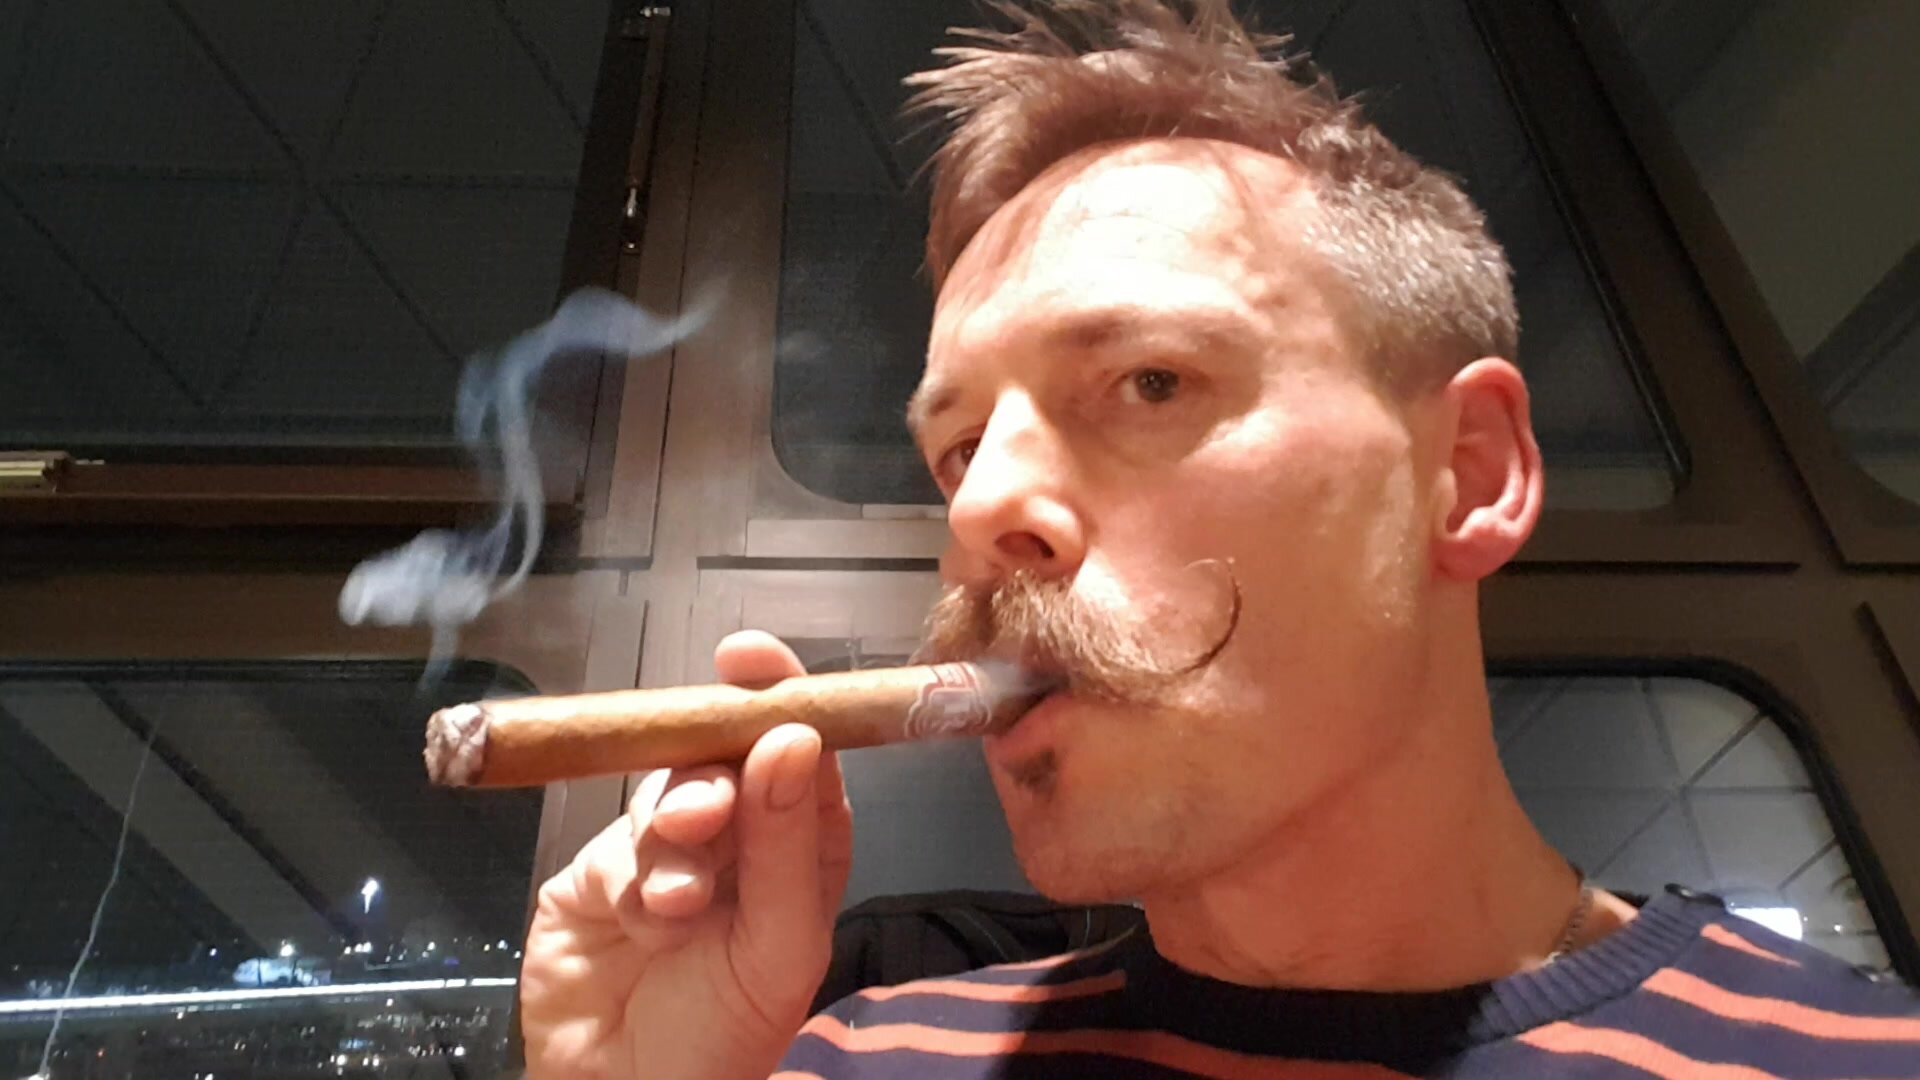 Cigar at the airport